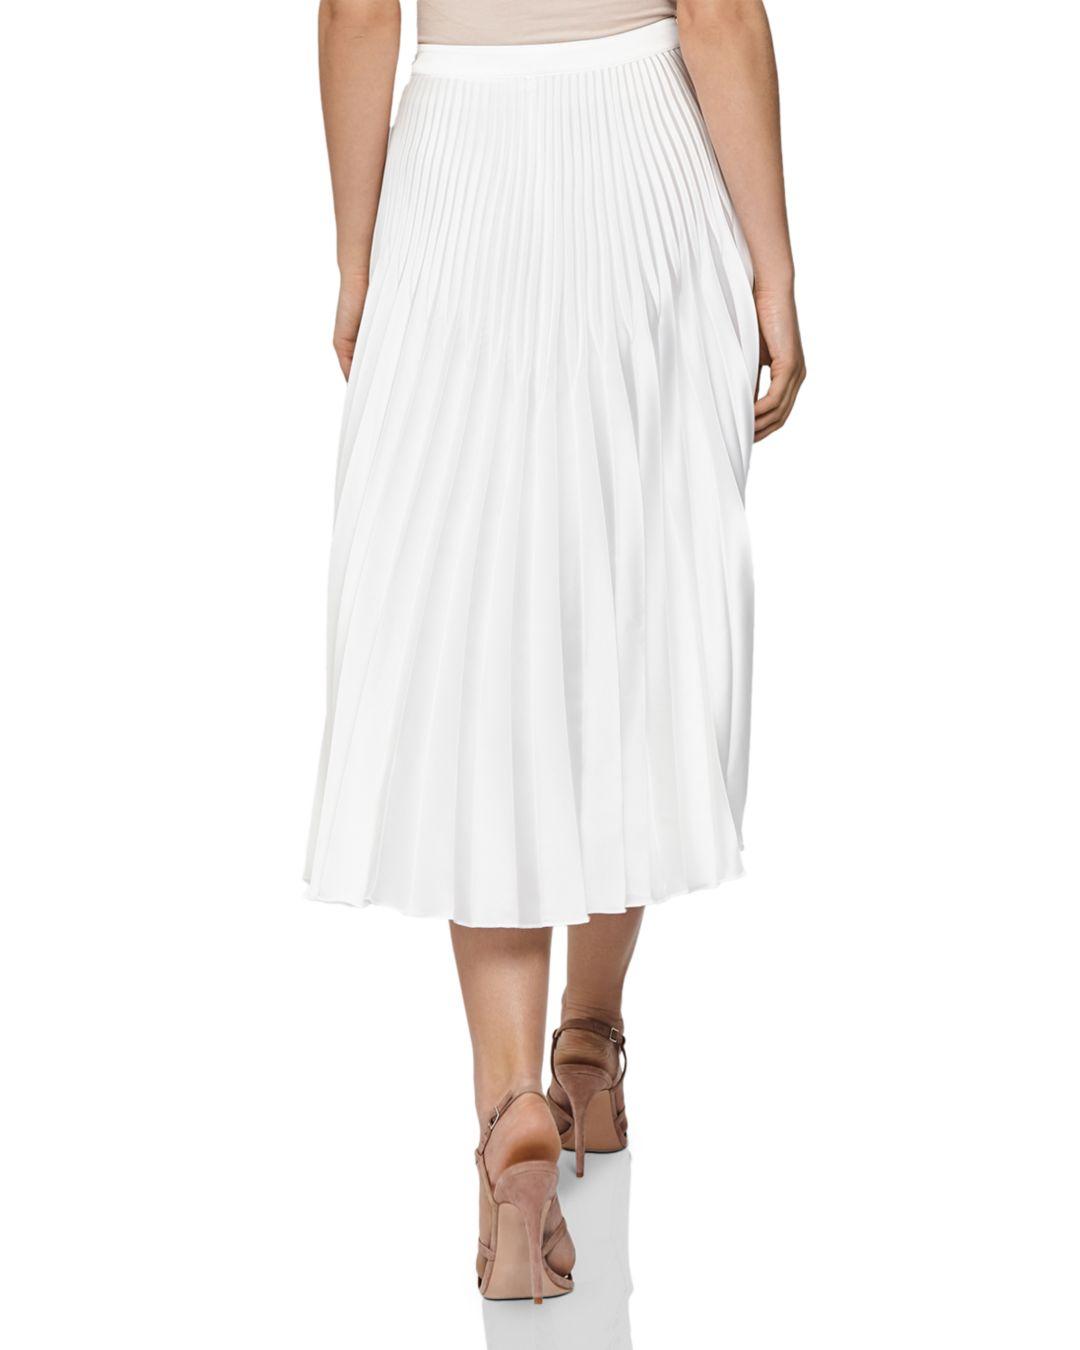 Reiss Dora Pleated Midi Skirt in White - Lyst